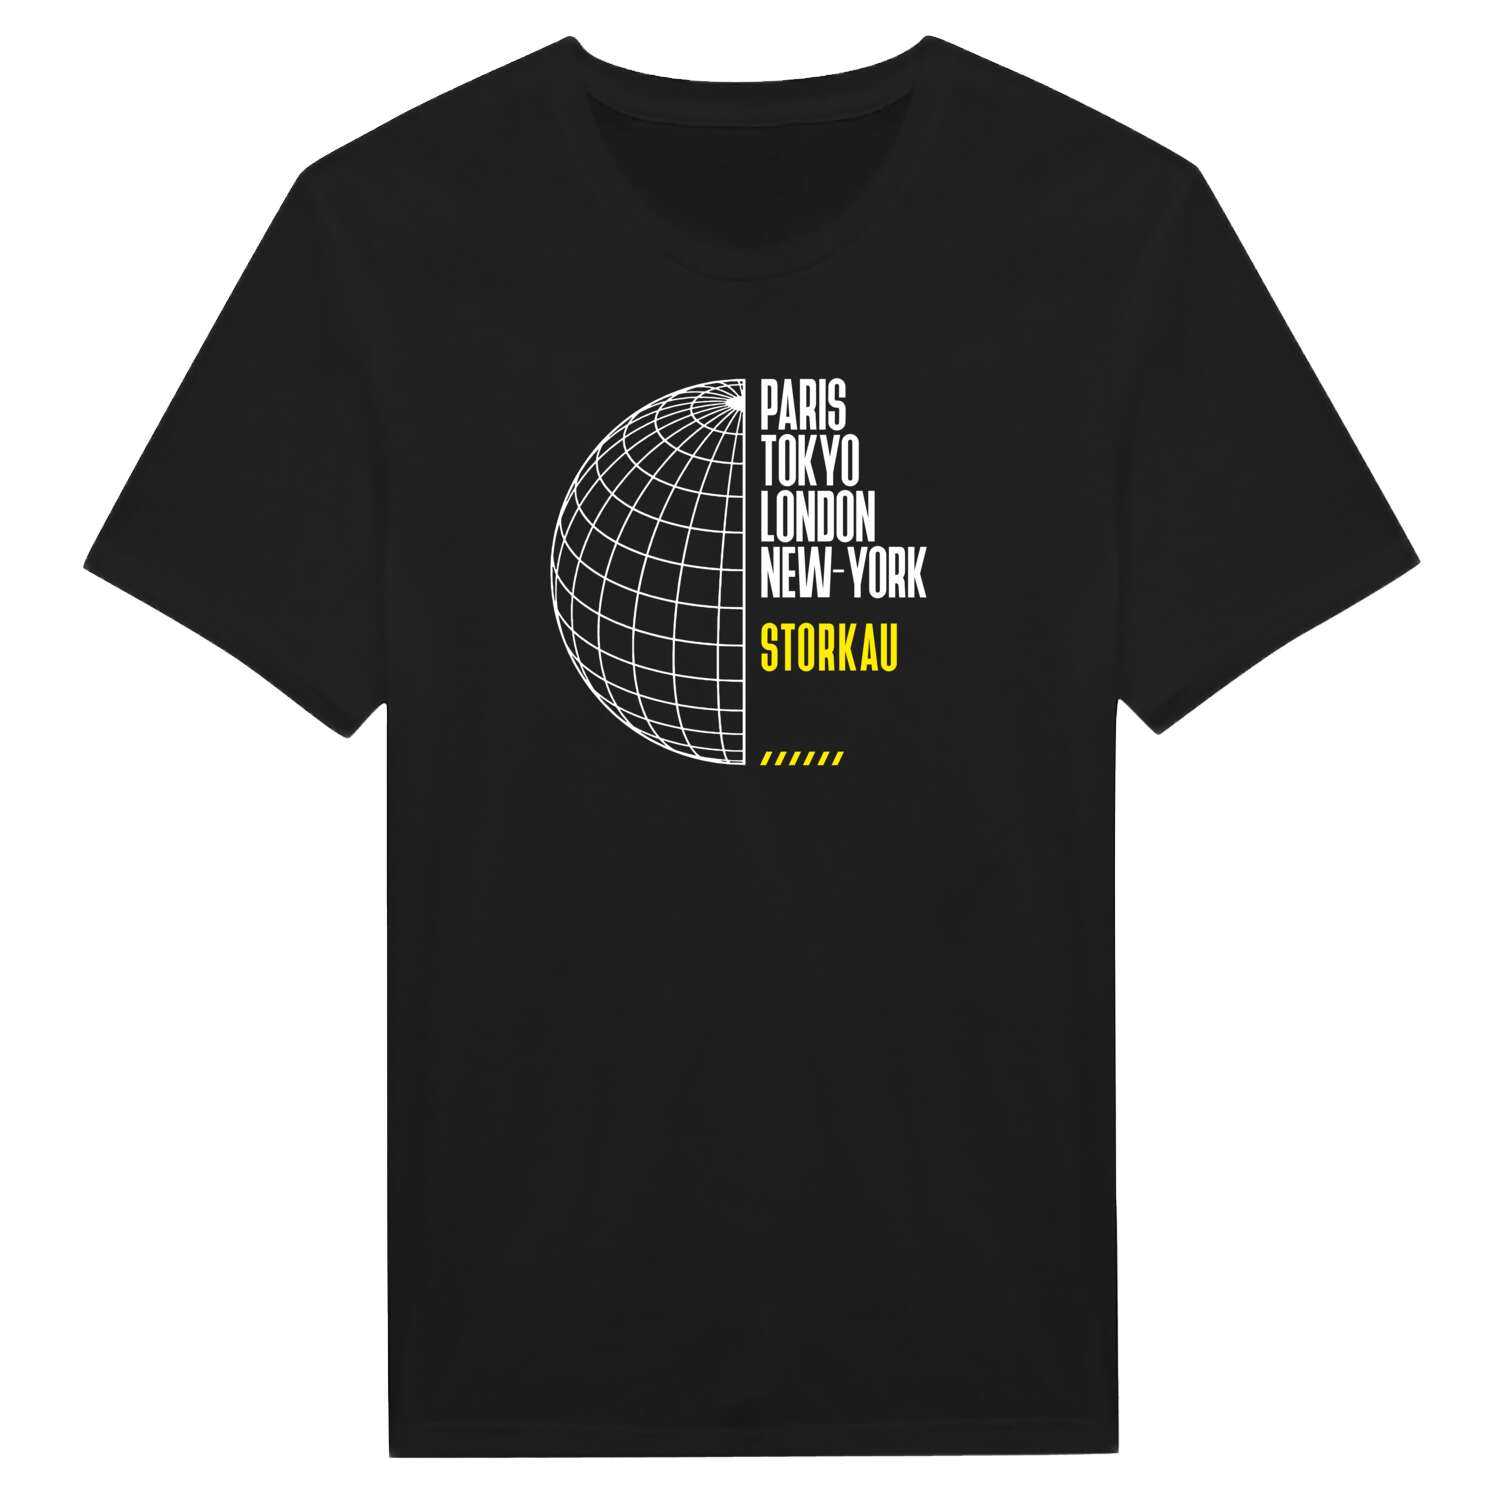 Storkau T-Shirt »Paris Tokyo London«